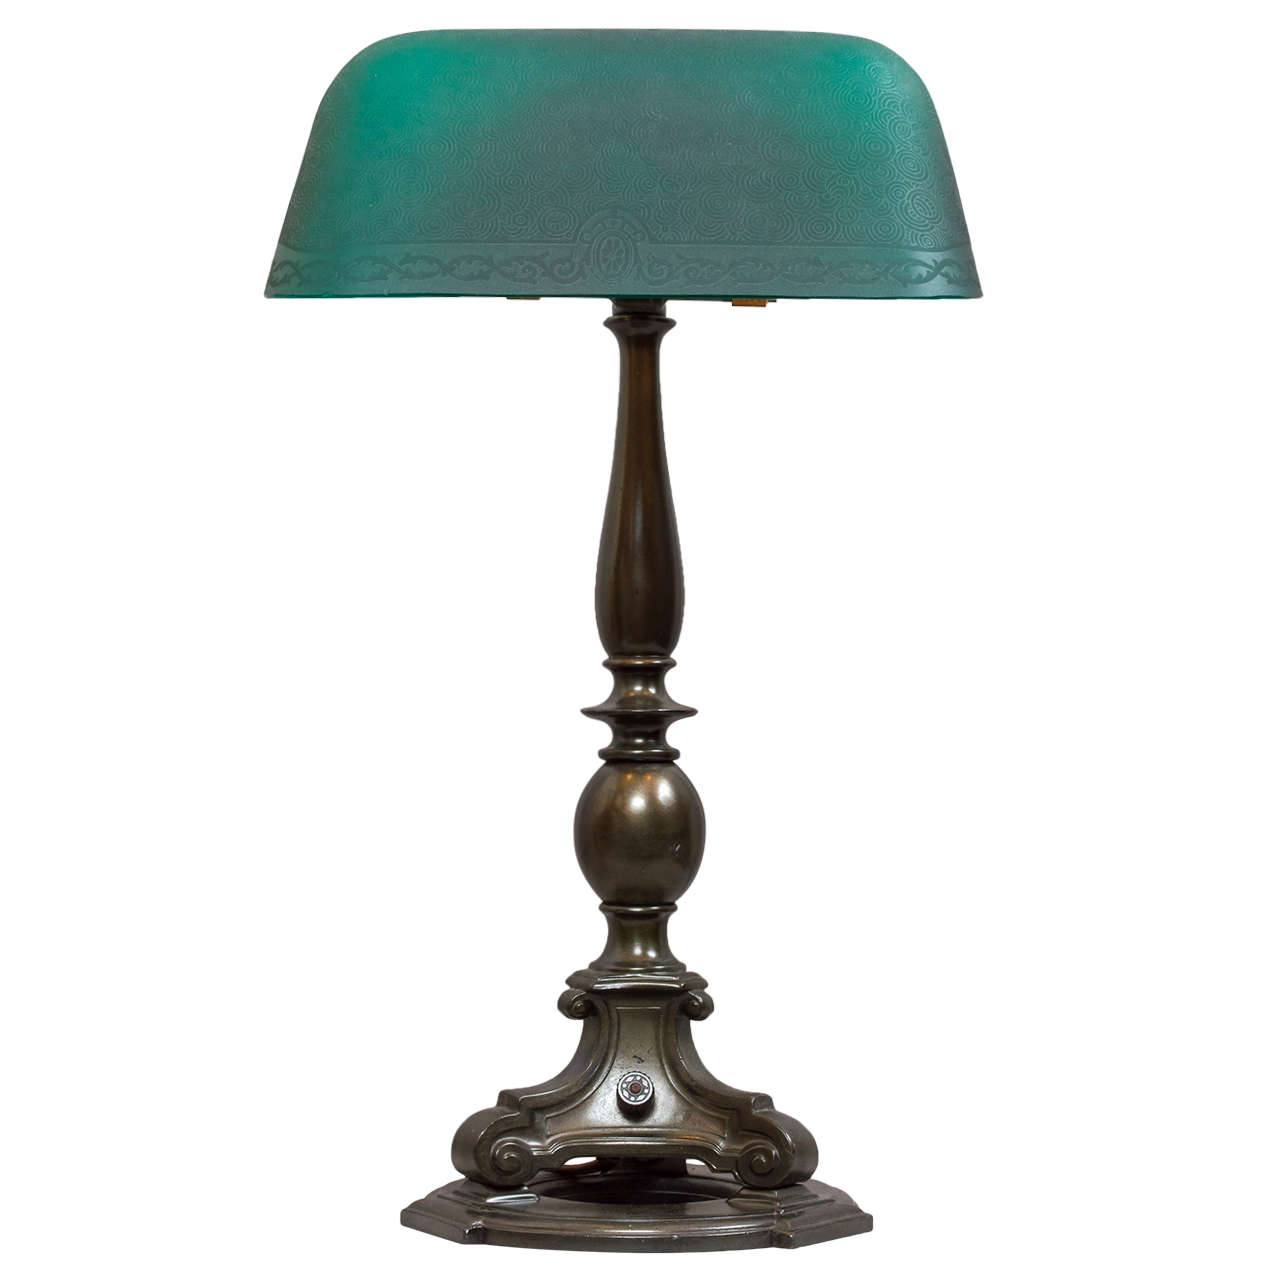 Emeralite Banker's Style Desk Lamp